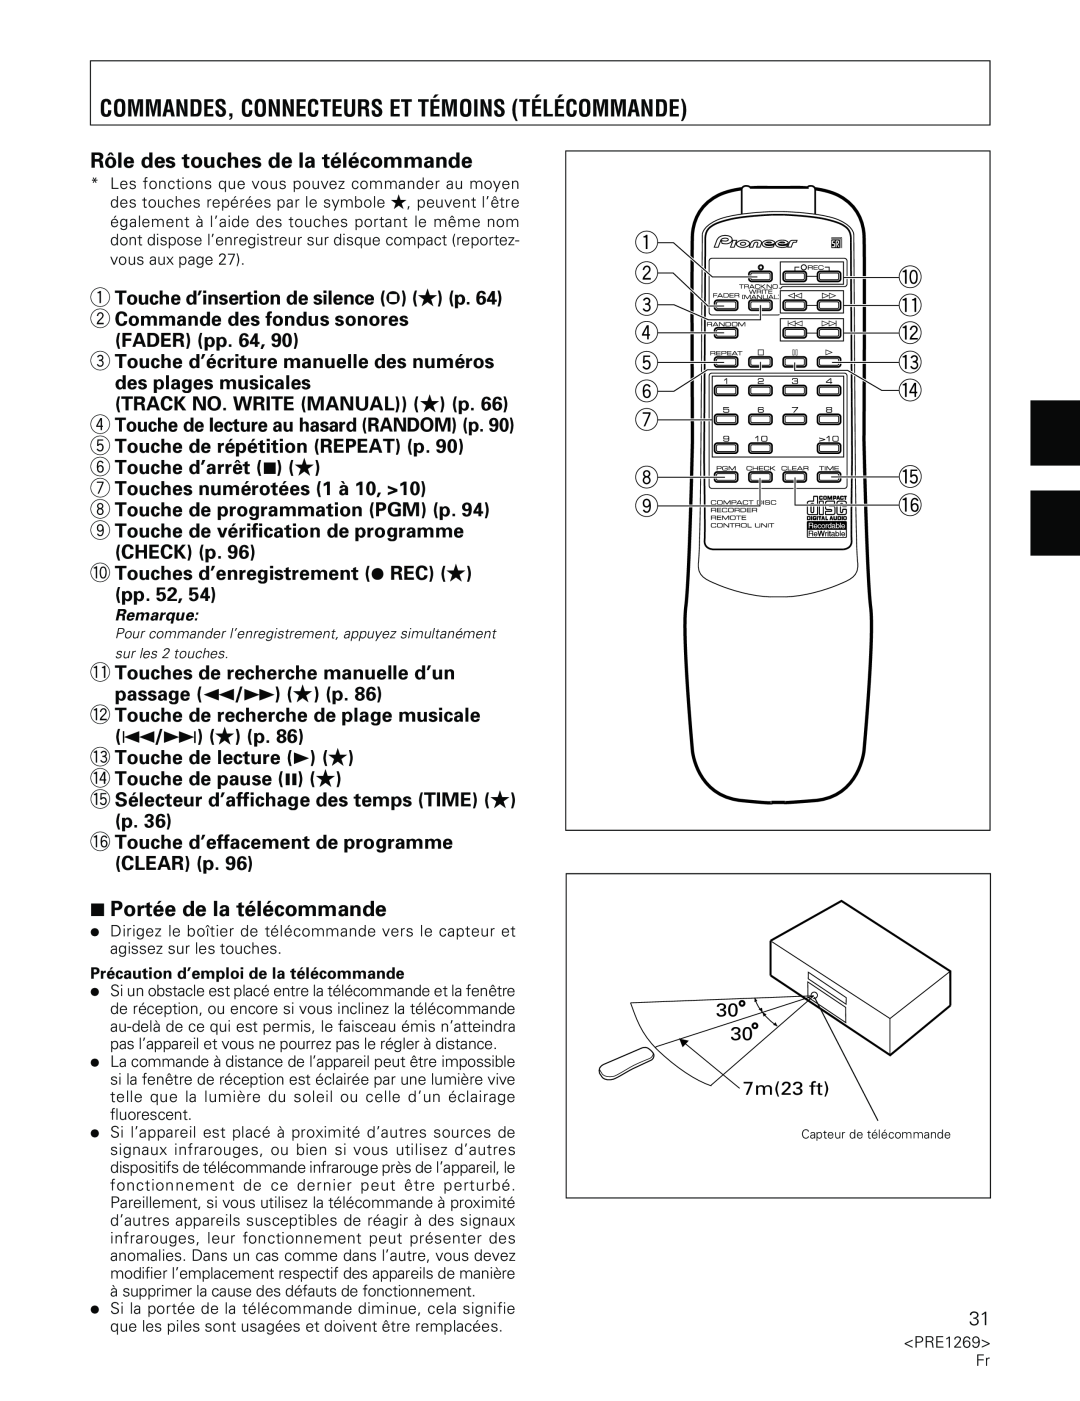 Pioneer PDR-555RW Commandes, Connecteurs Et Témoins Télécommande, Rôle des touches de la télécommande 